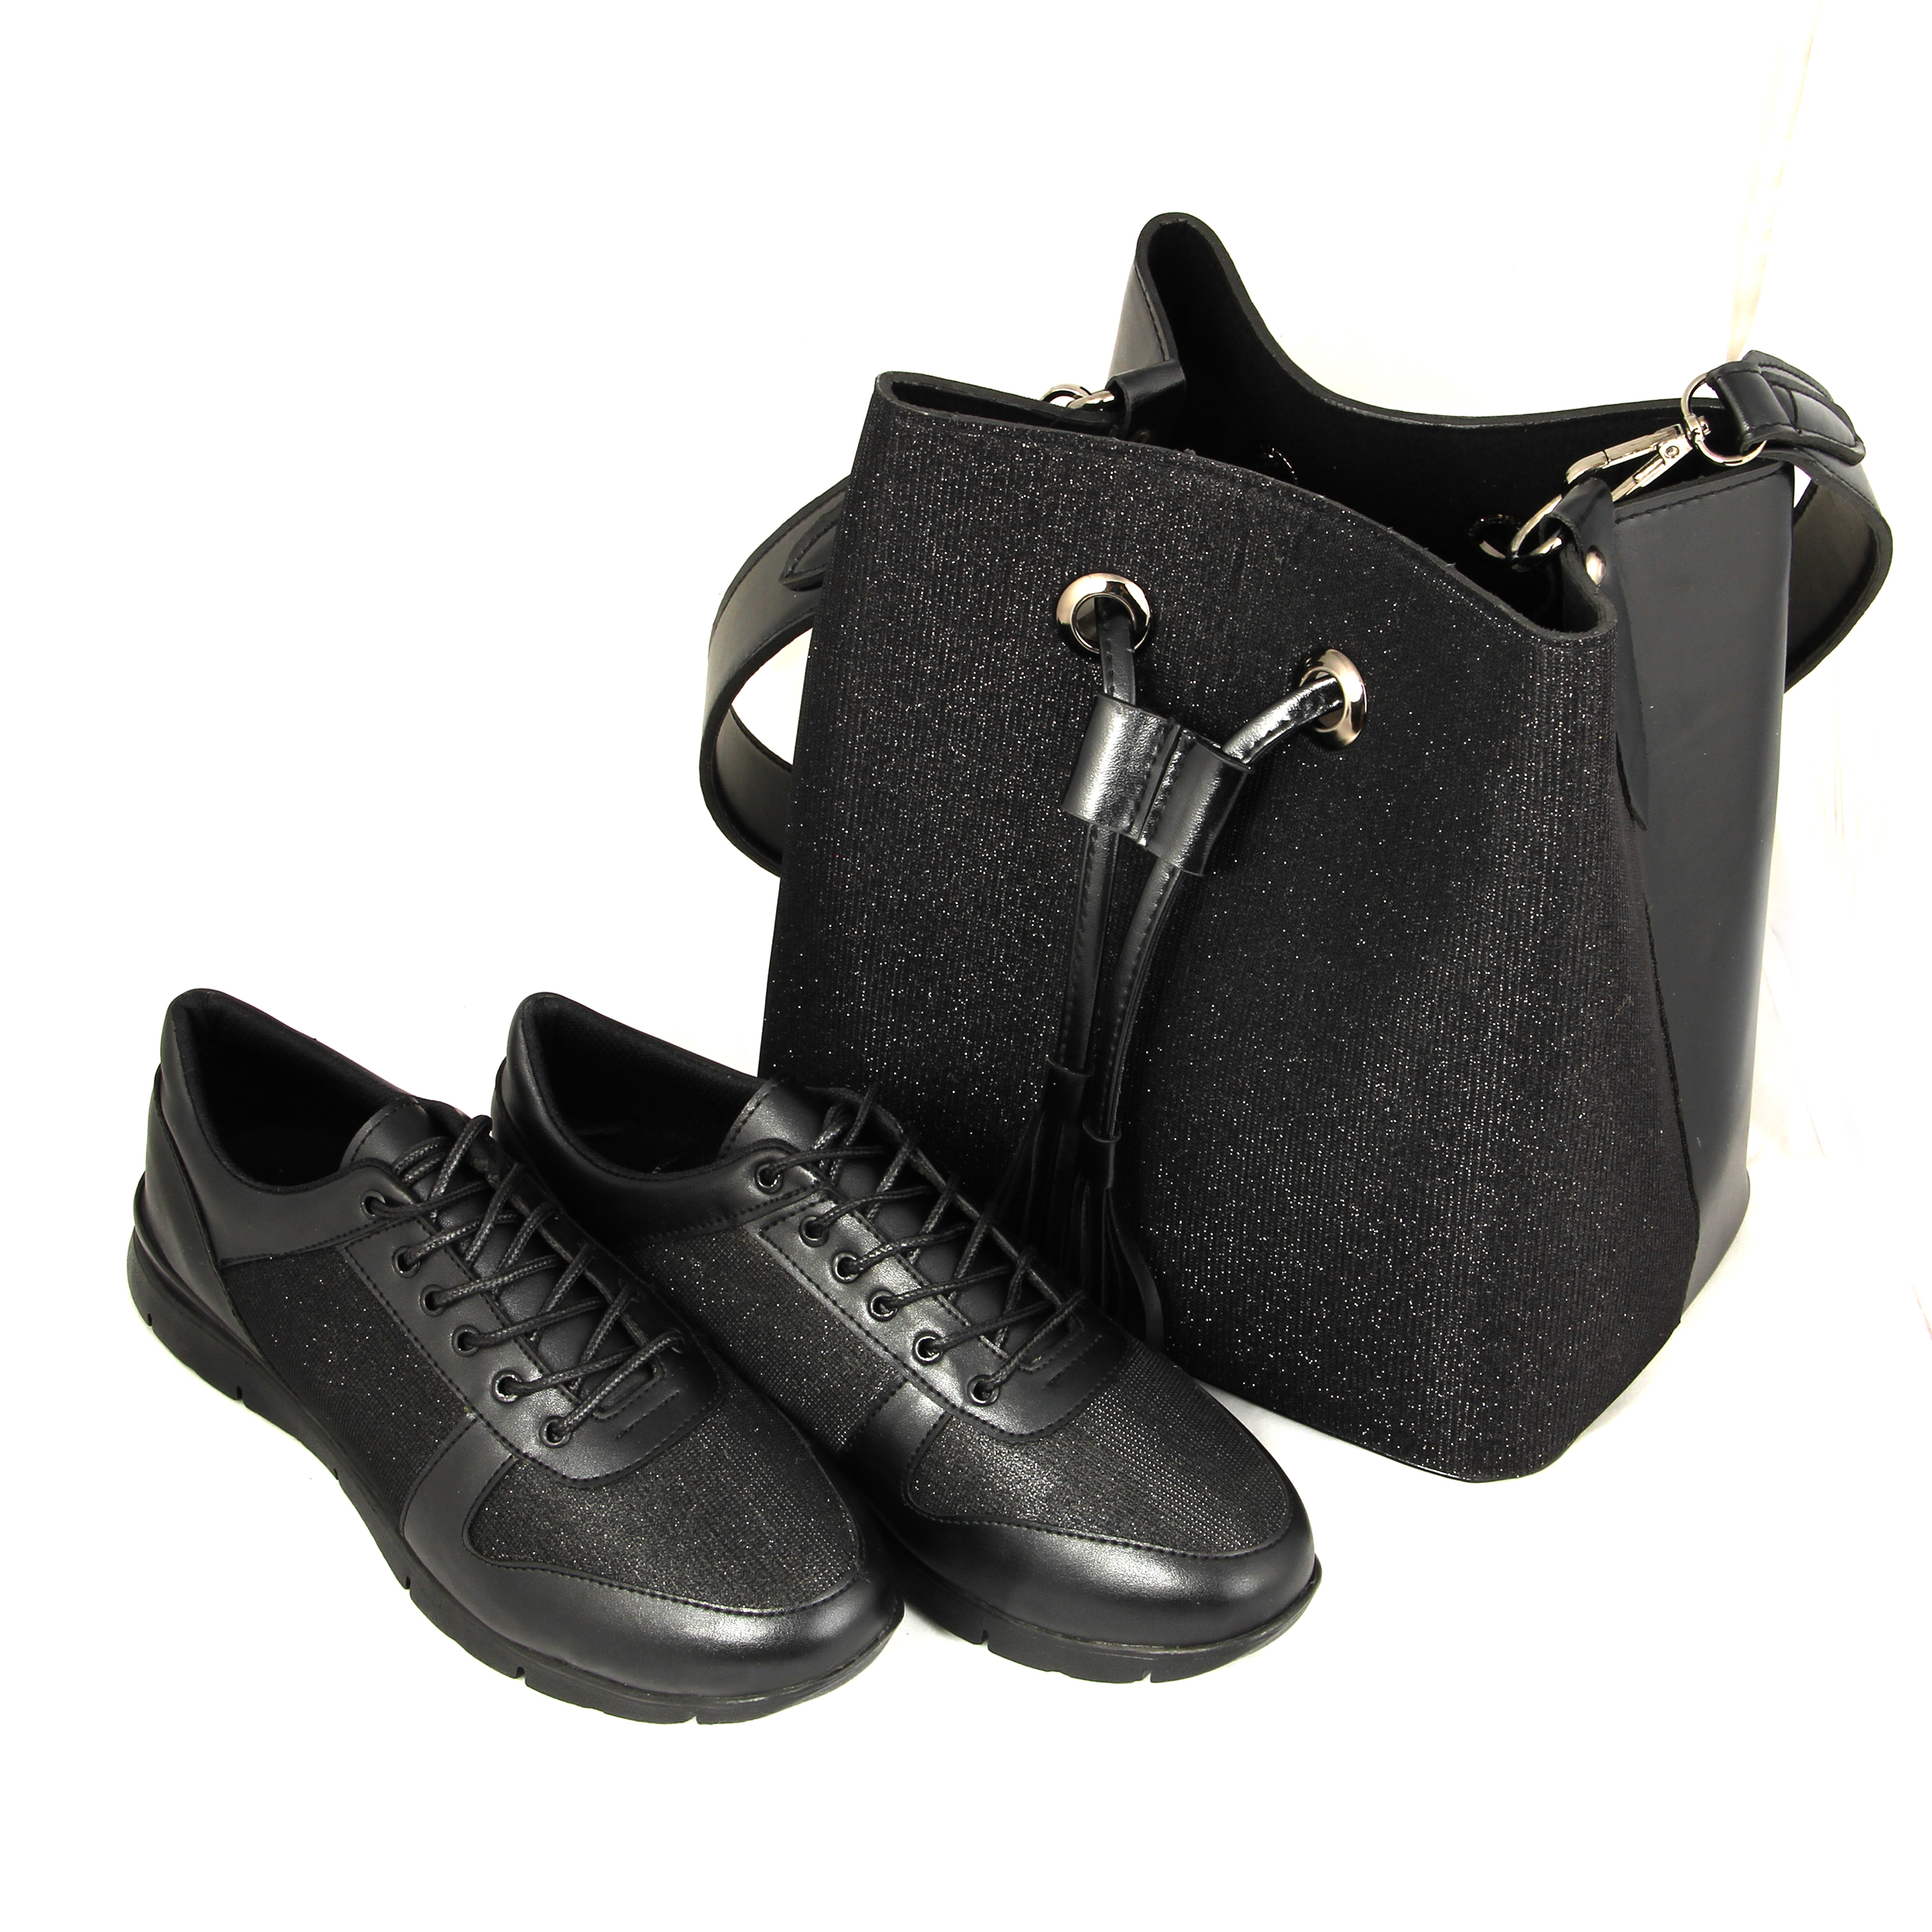 ست کیف و کفش زنانه کد st228